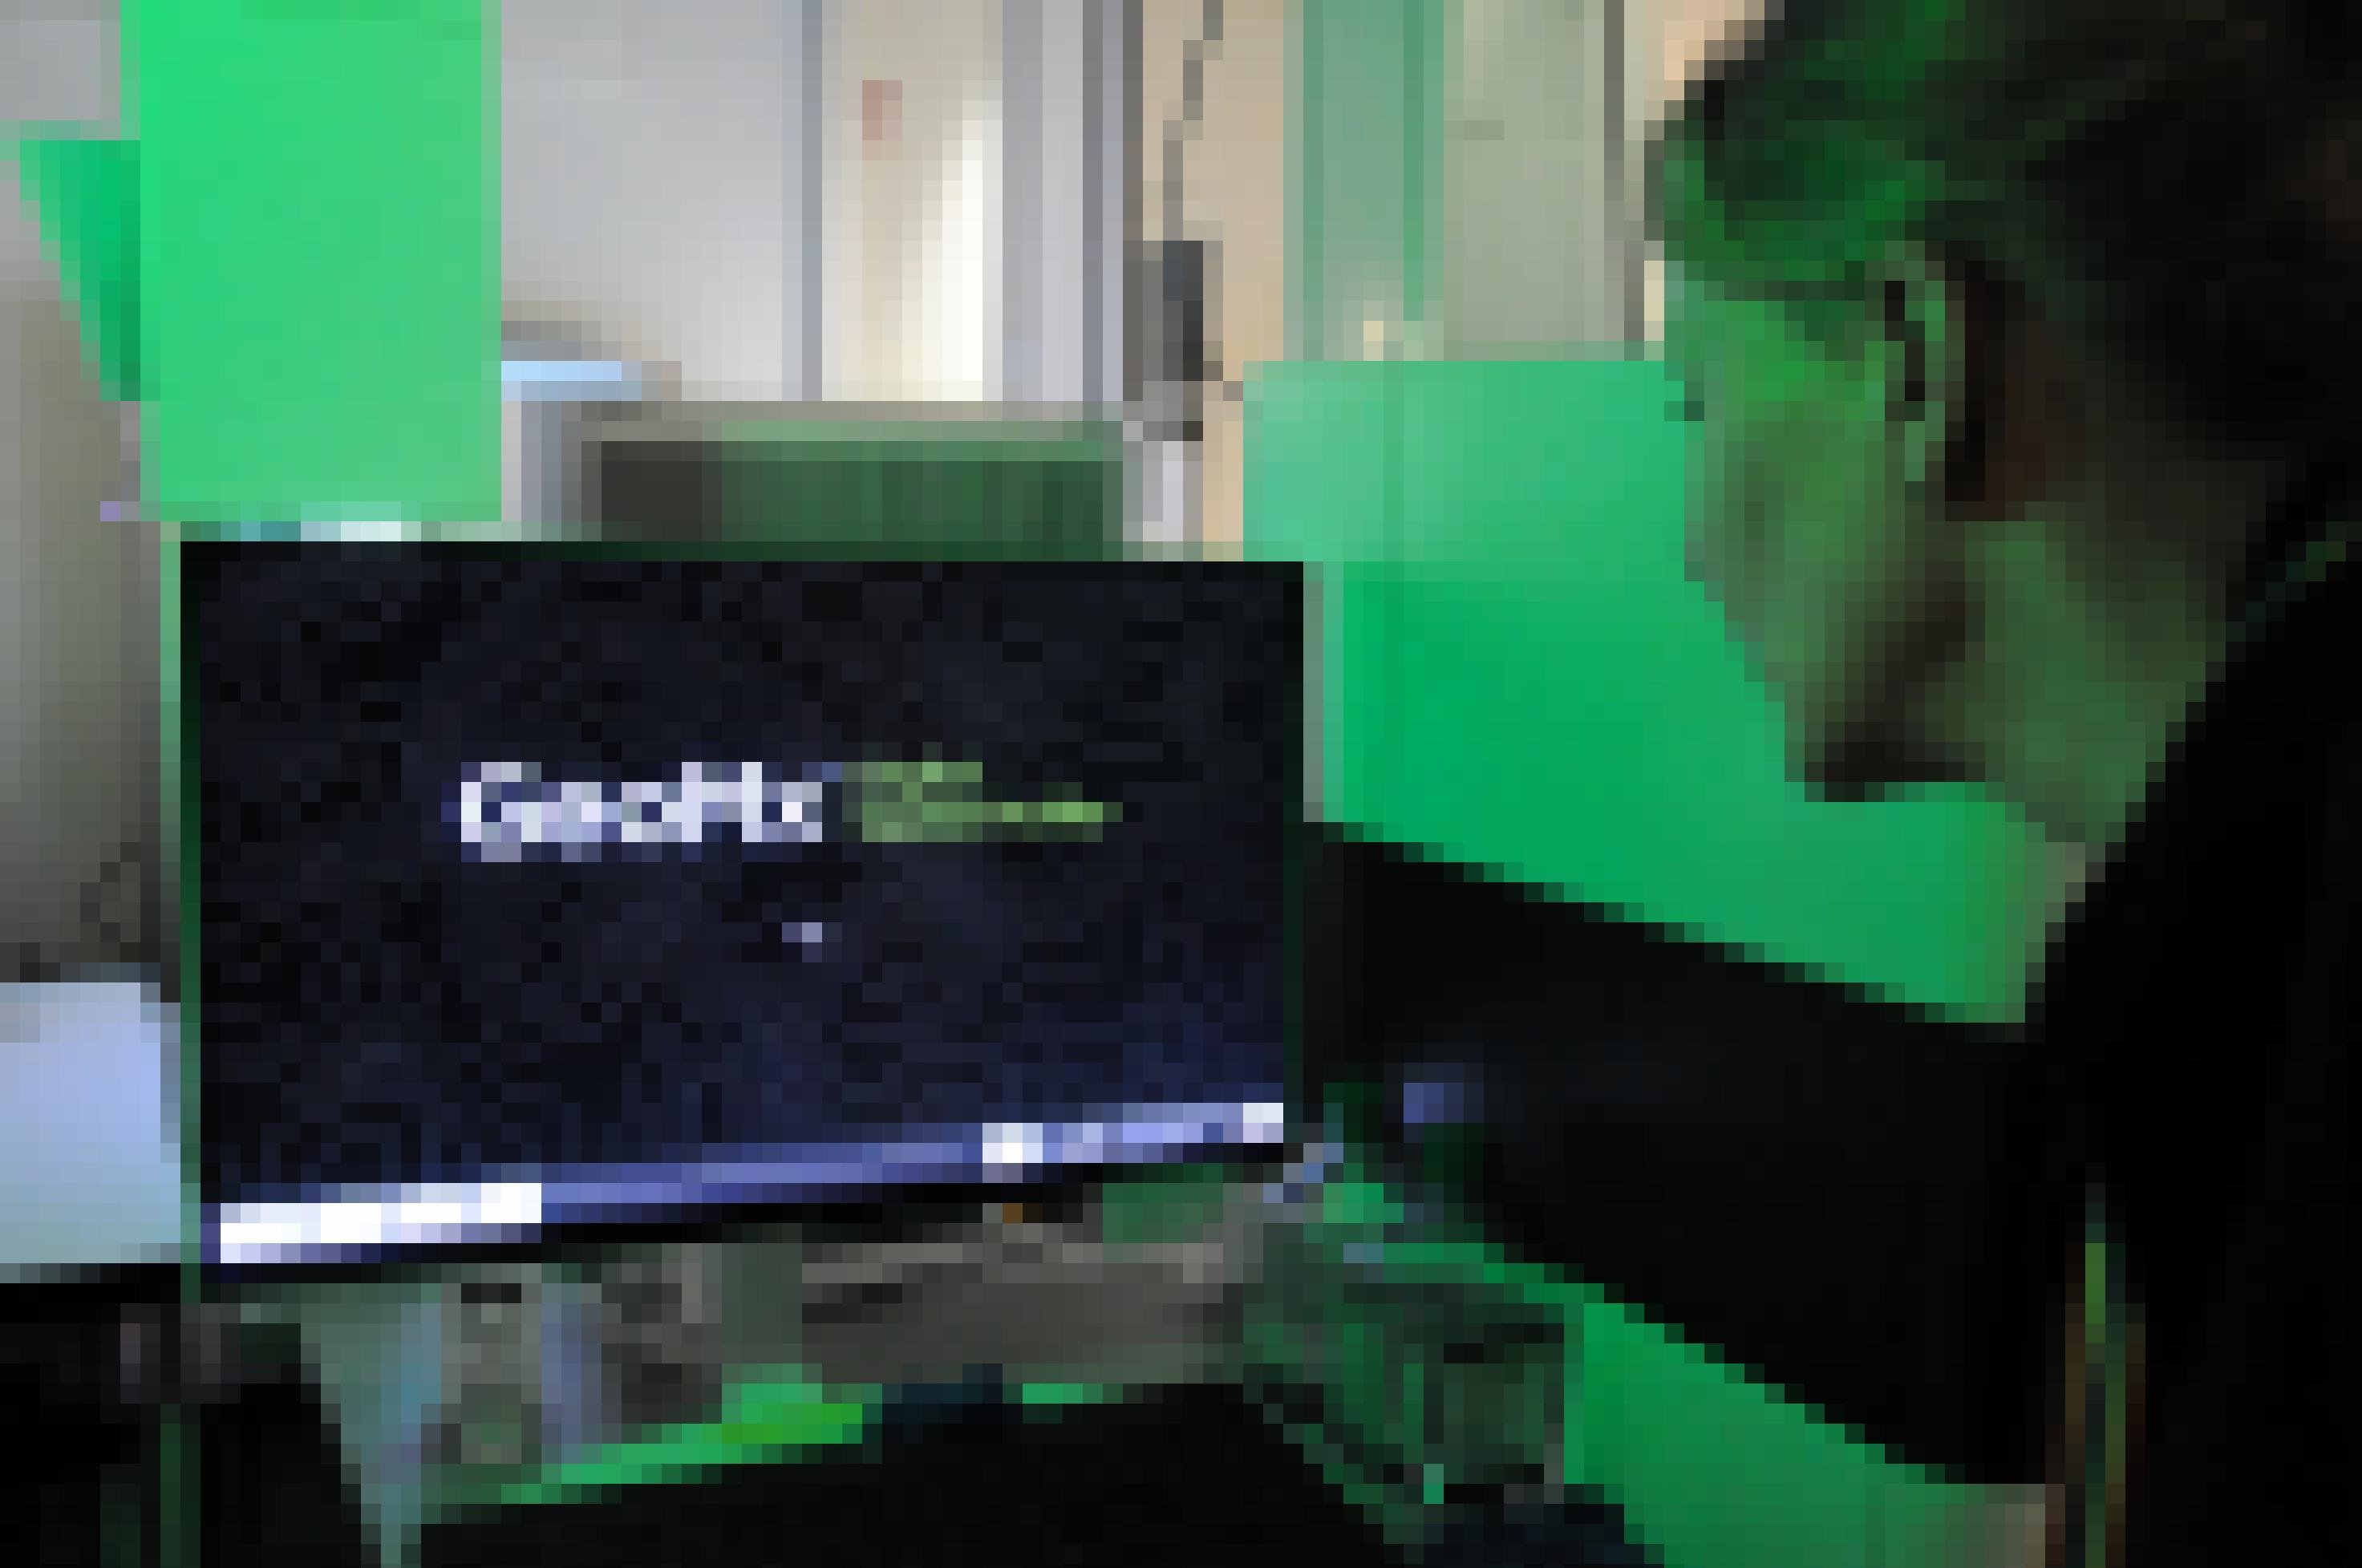 Im Zentrum eines grün beleuchteten Raums steht ein schwarzer Monitor mit der Aufschrift GeoMx. Rechts davon sieht man halb von hinten eine mittelalte Frau, die auf den Monitor blickt.